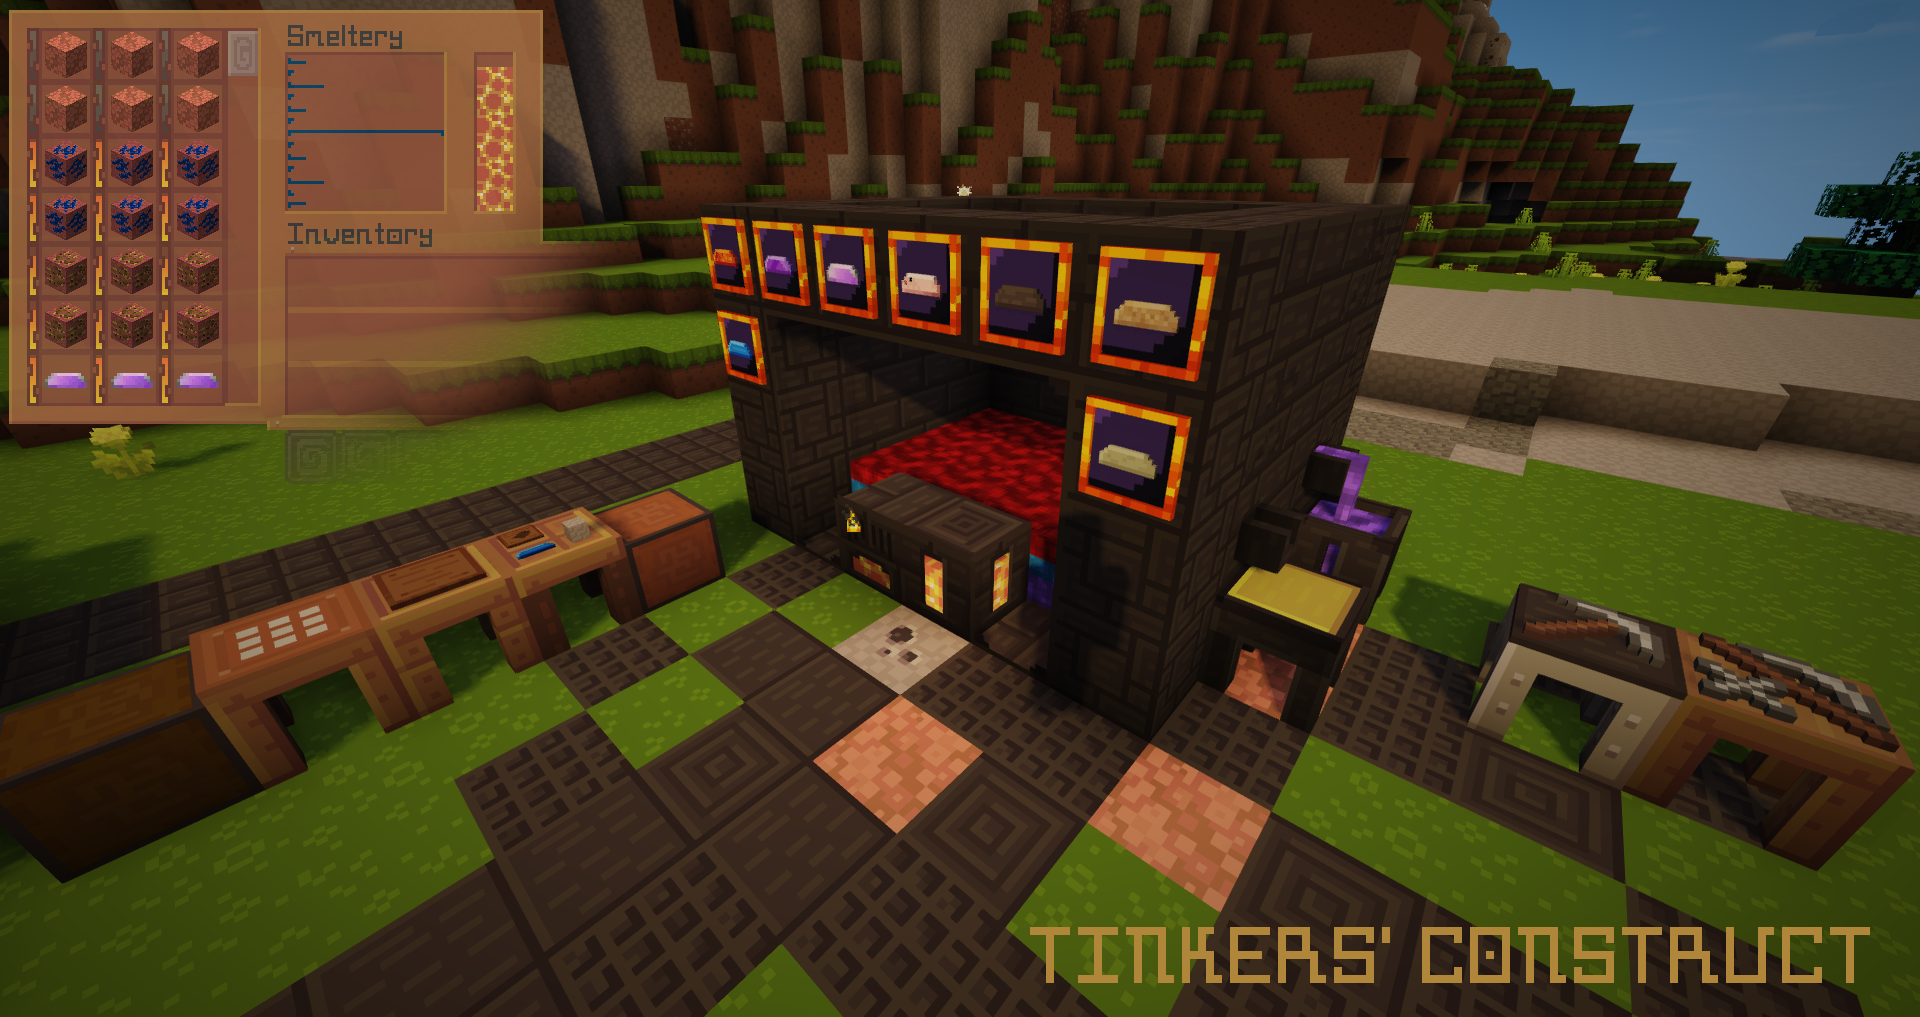 Tinker 1.12.2